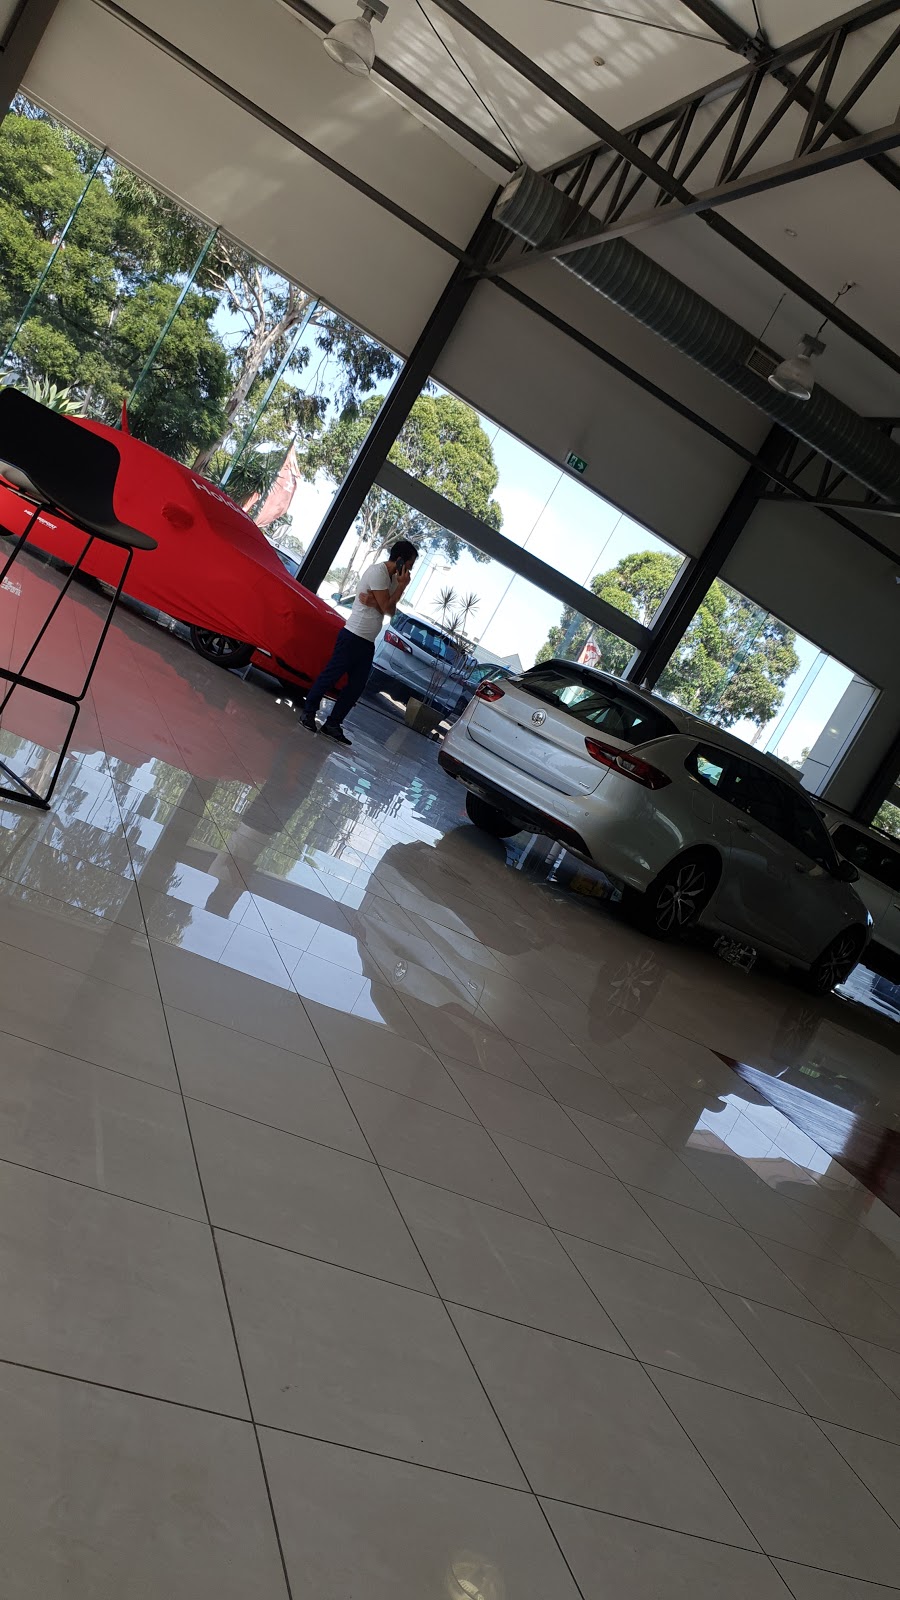 Peninsula Holden | car dealer | 376 Edgar St, Condell Park NSW 2200, Australia | 0289993771 OR +61 2 8999 3771